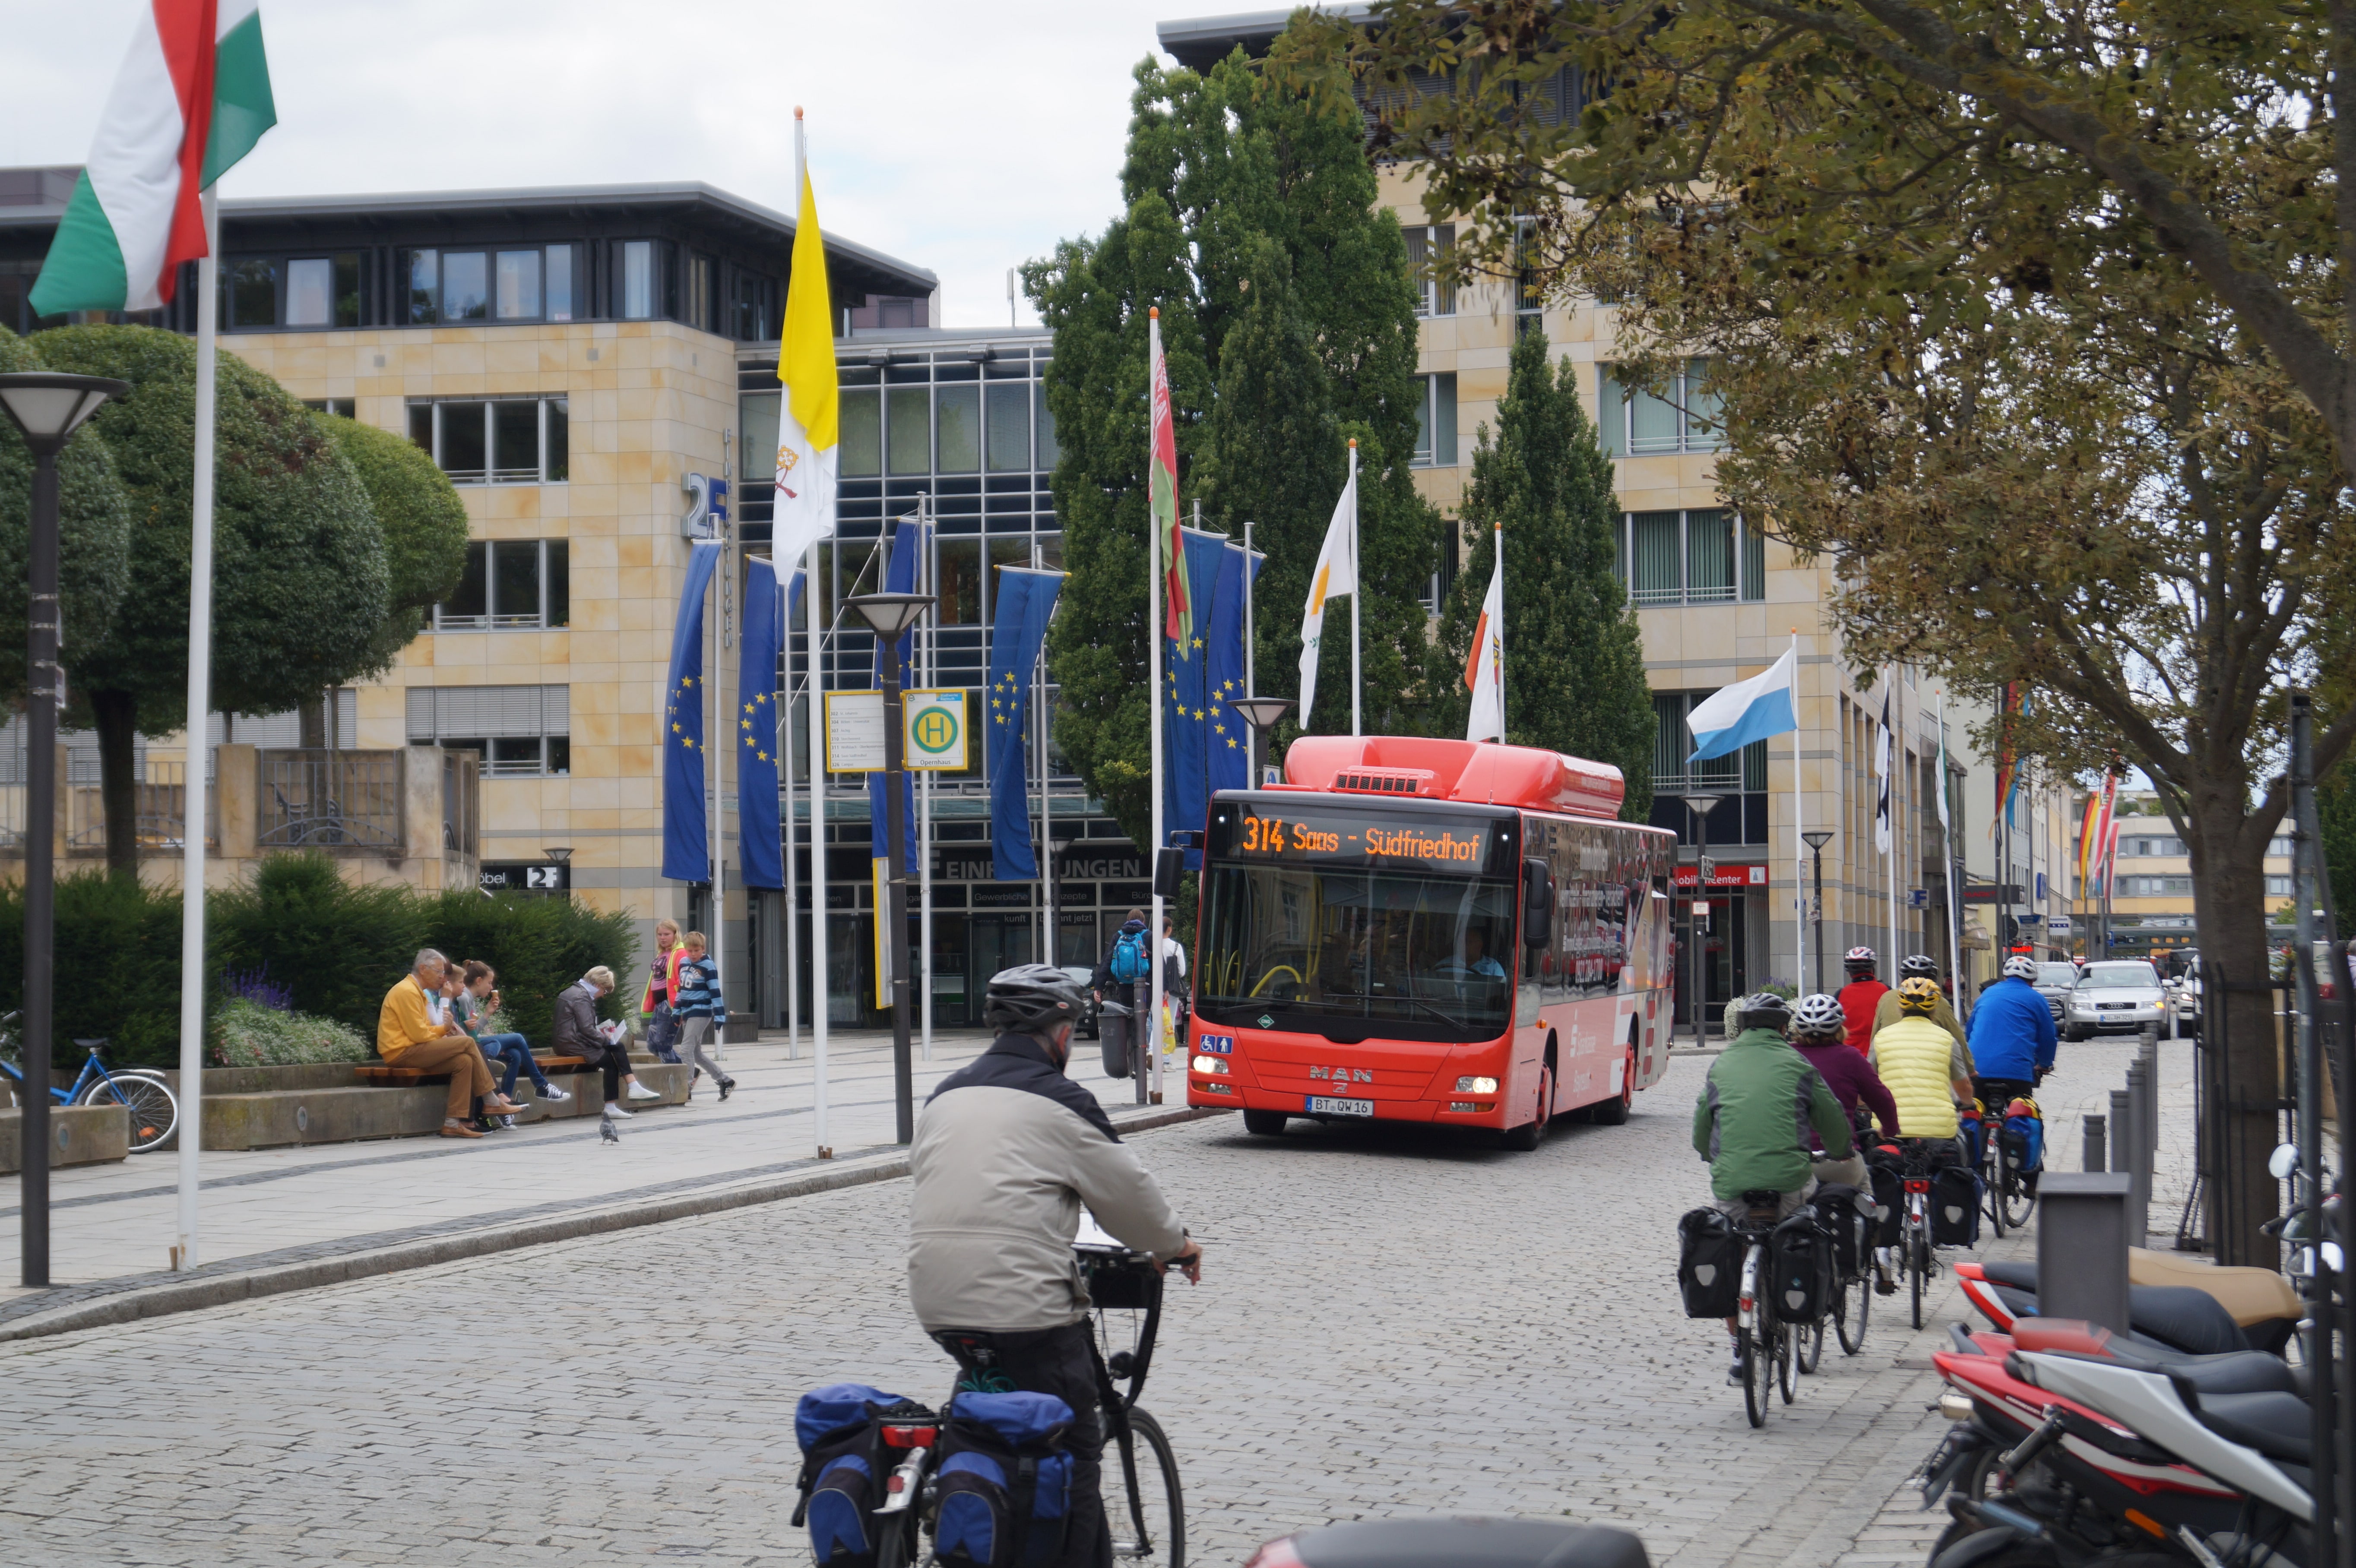 Fahrradfahrer begegnen einem Stadtbus auf einer belebten Straße.